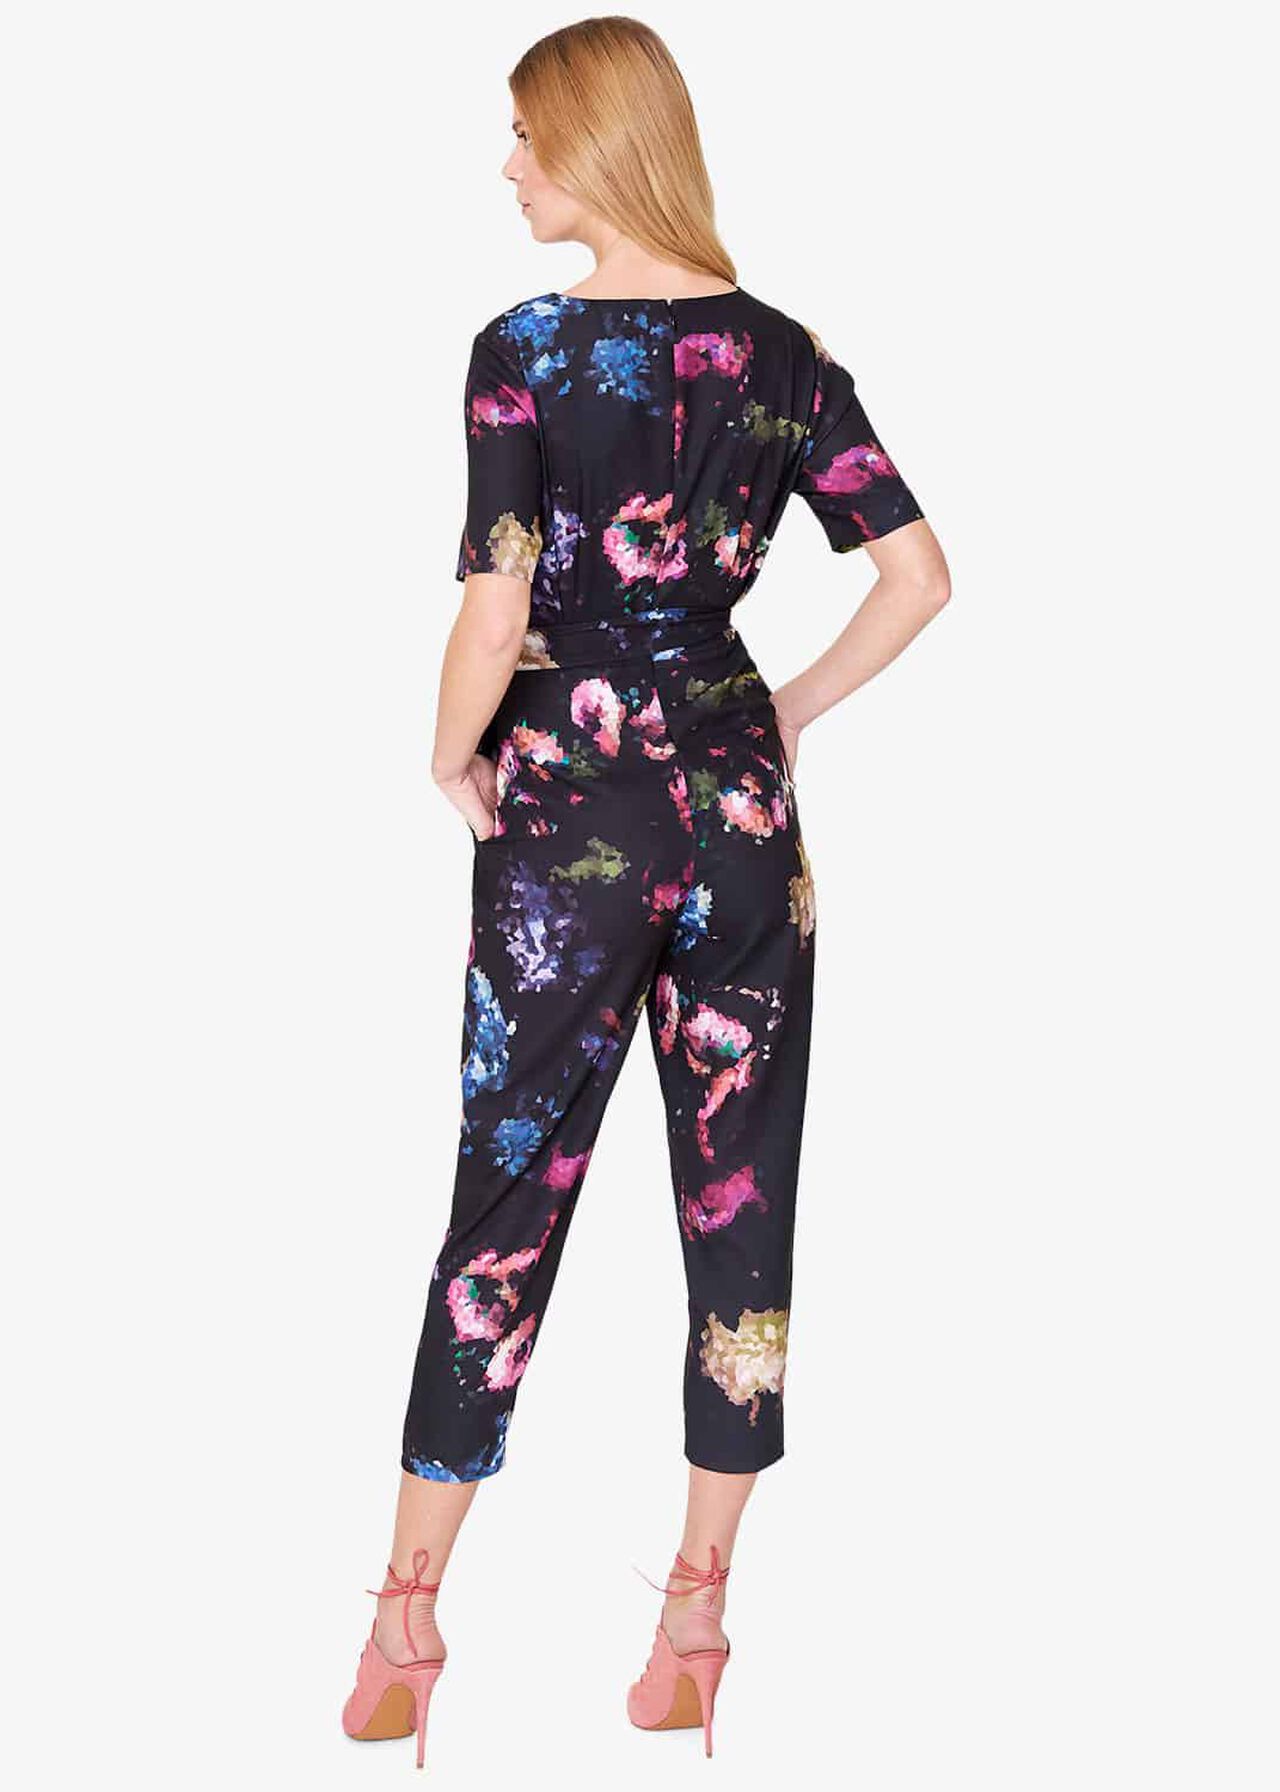 Pixelated Floral Print Jumpsuit